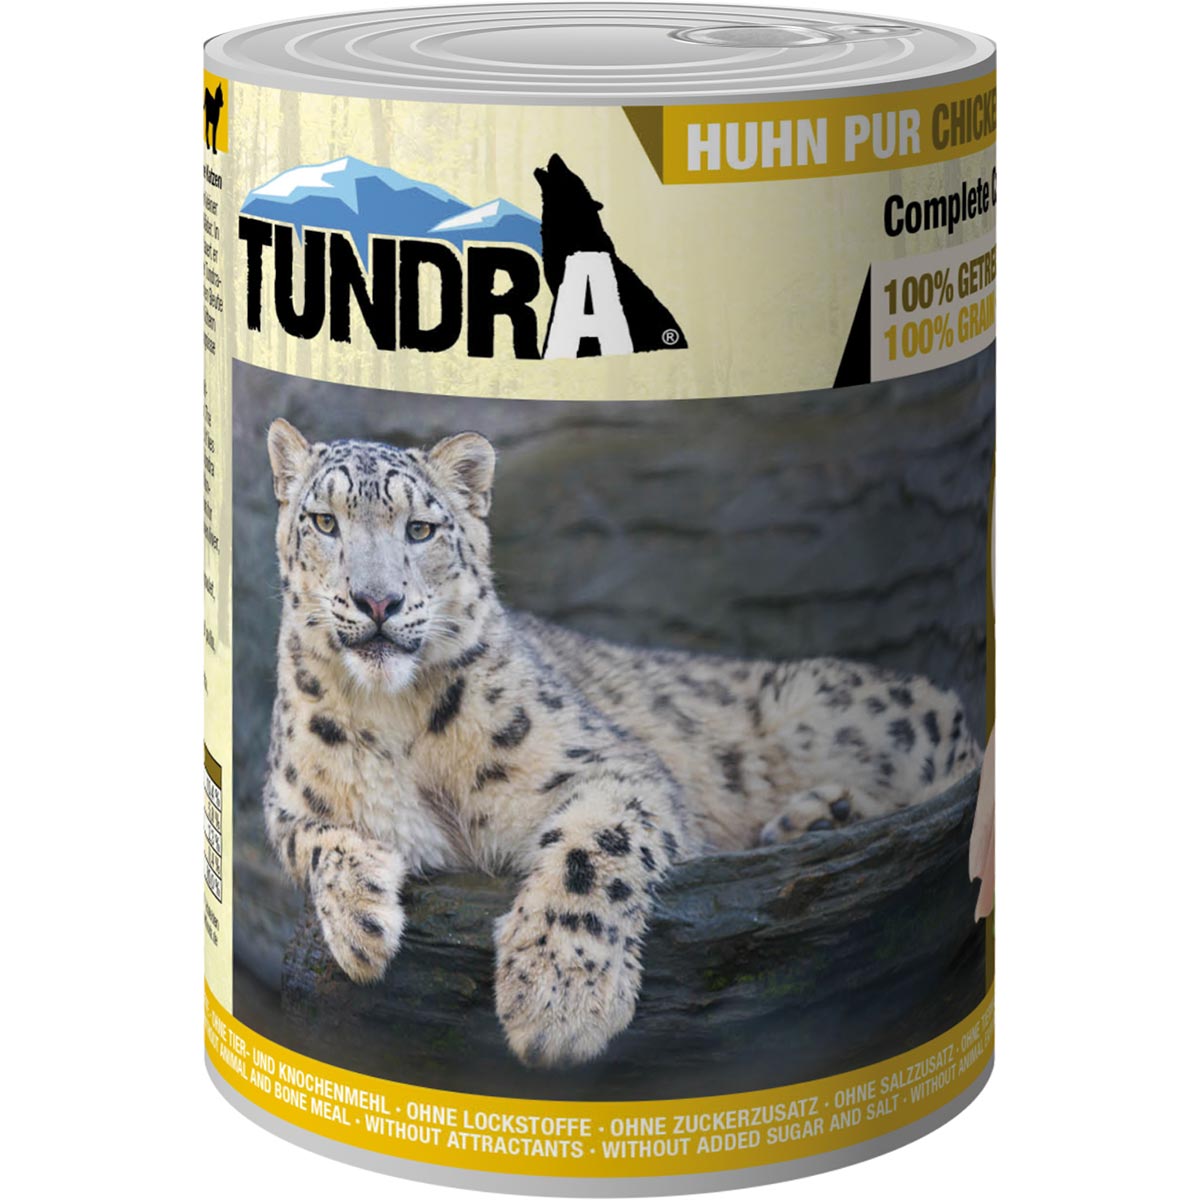 Tundra Cat Huhn Pur 12x400g